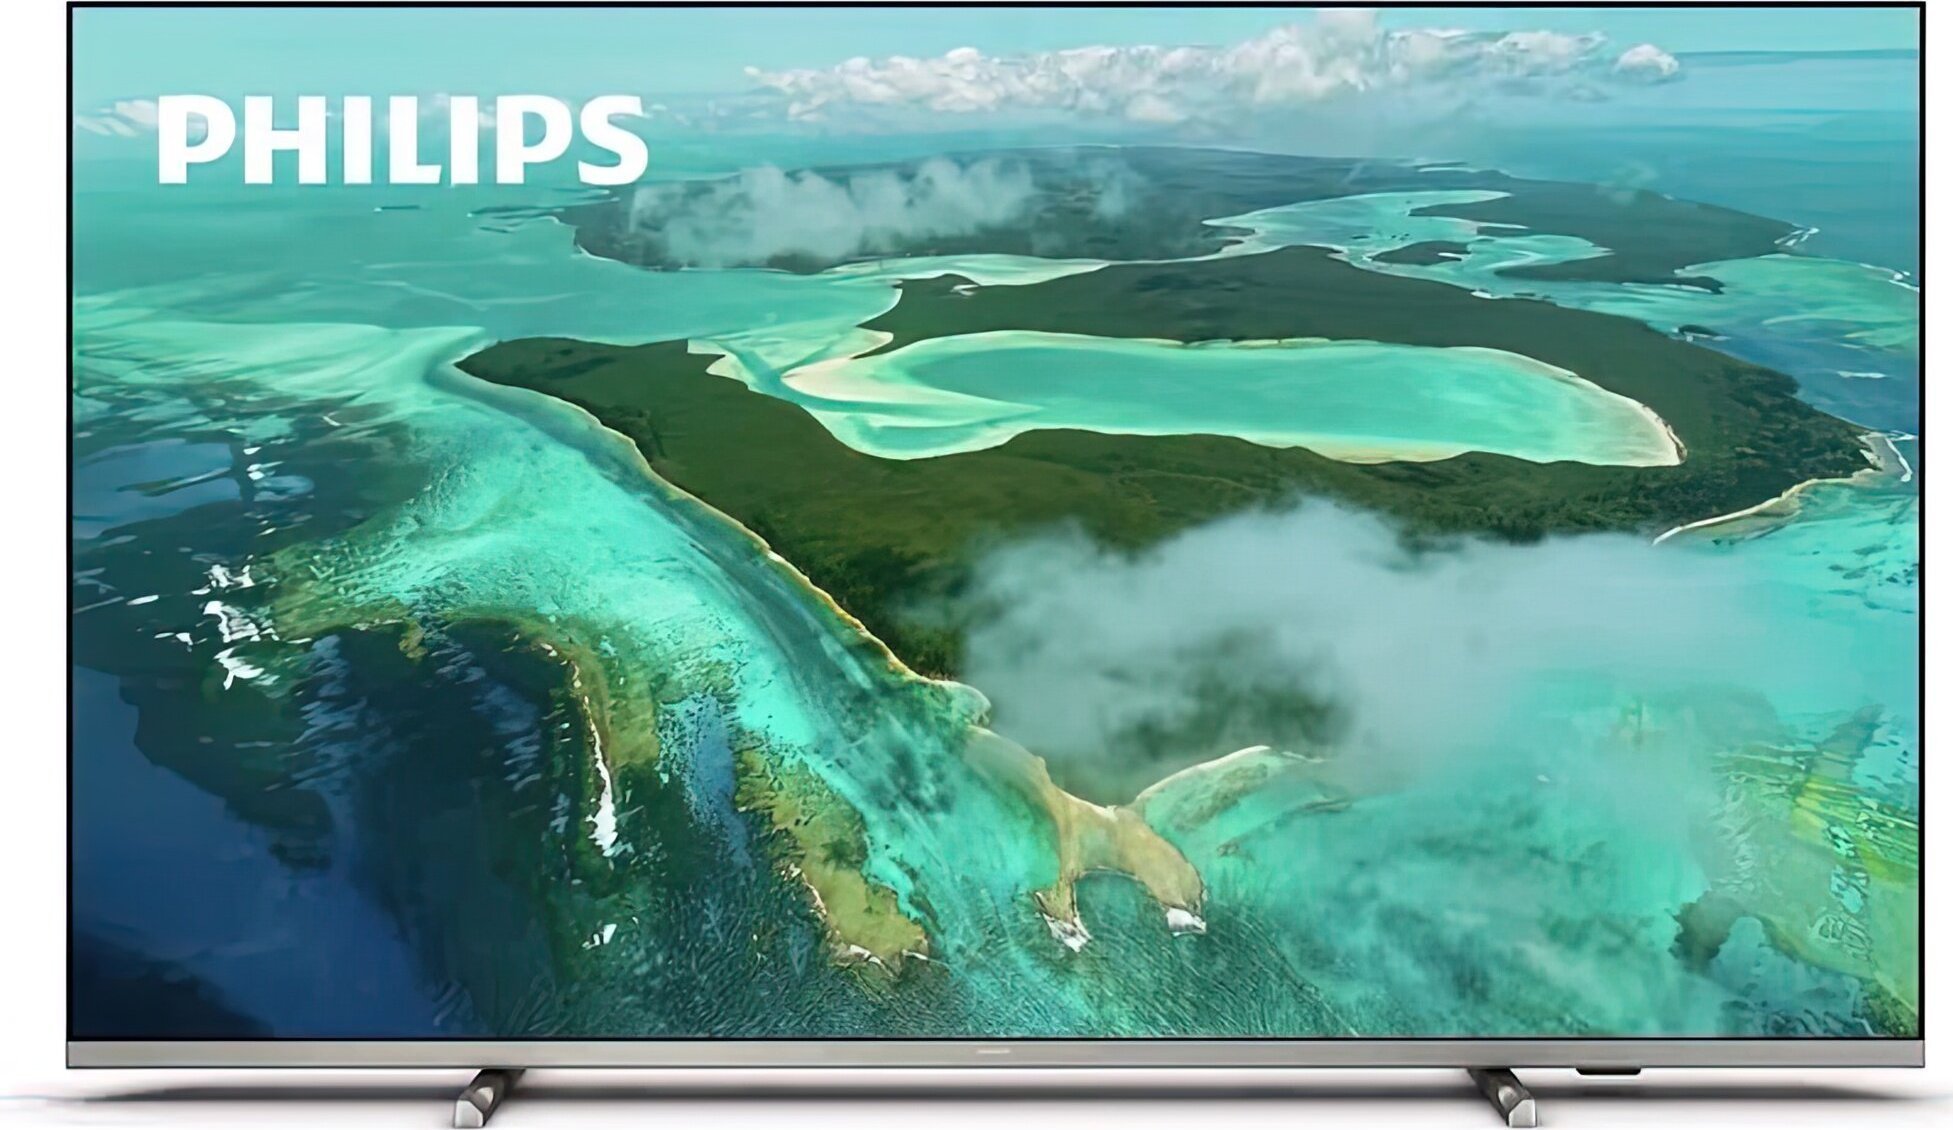 Philips 4K UHD LED SmartTV 55" 55PUS7657/12 3840x2160p HDR10+ 3xHDMI 2xUSB LAN WiFi DVB-T/T2/T2-HD/C/S/S2, 20W LED Televizors